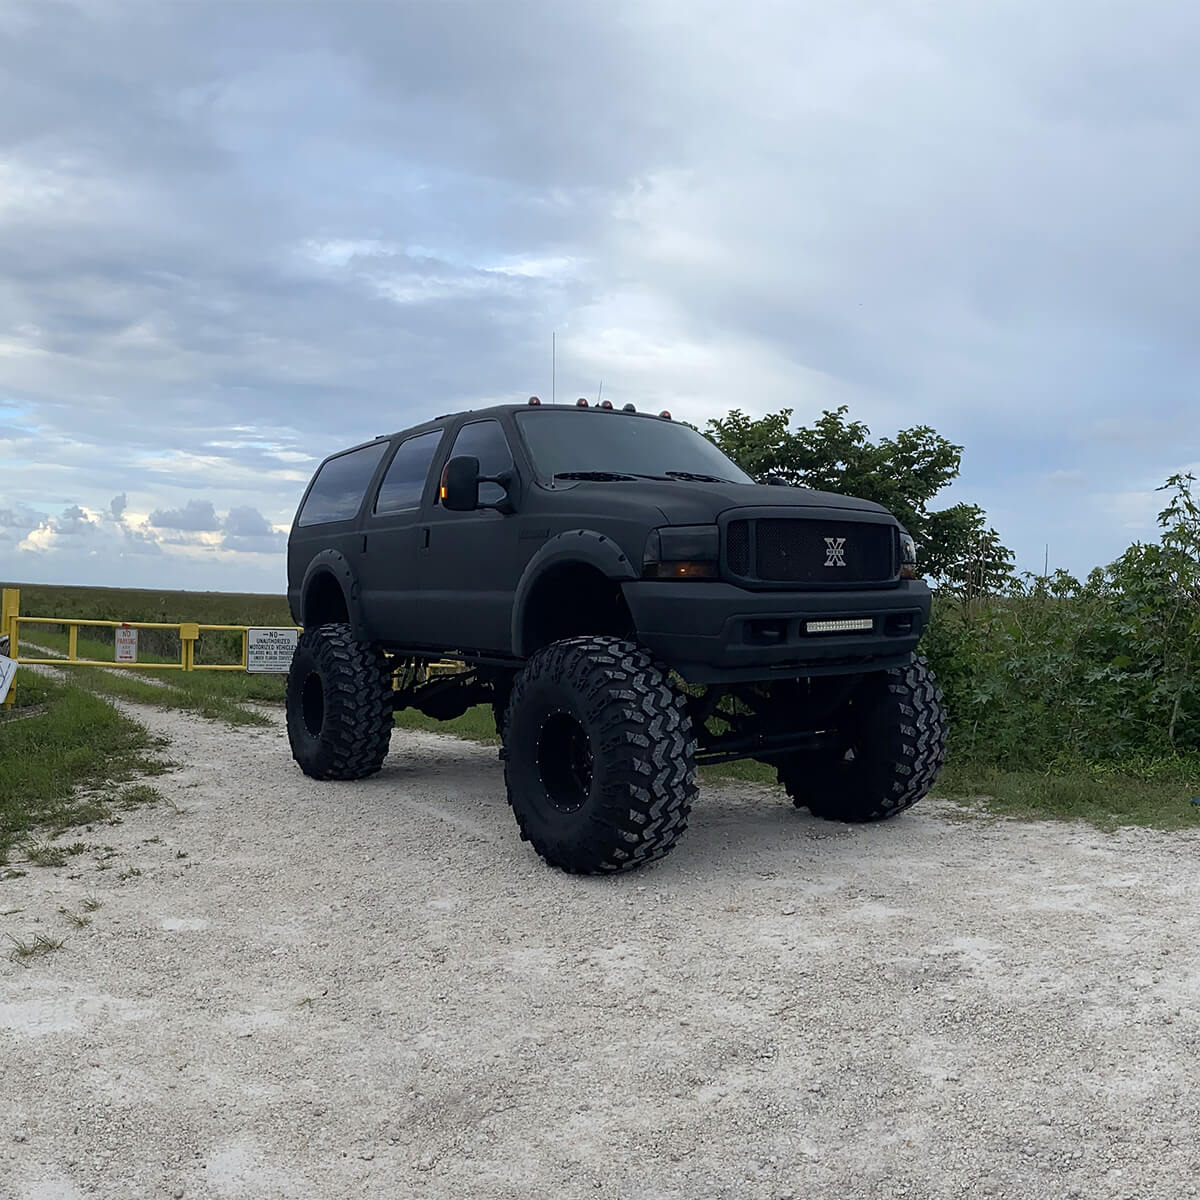 Matte black Ford Excursion lifted truck on 49" super Swamper tires